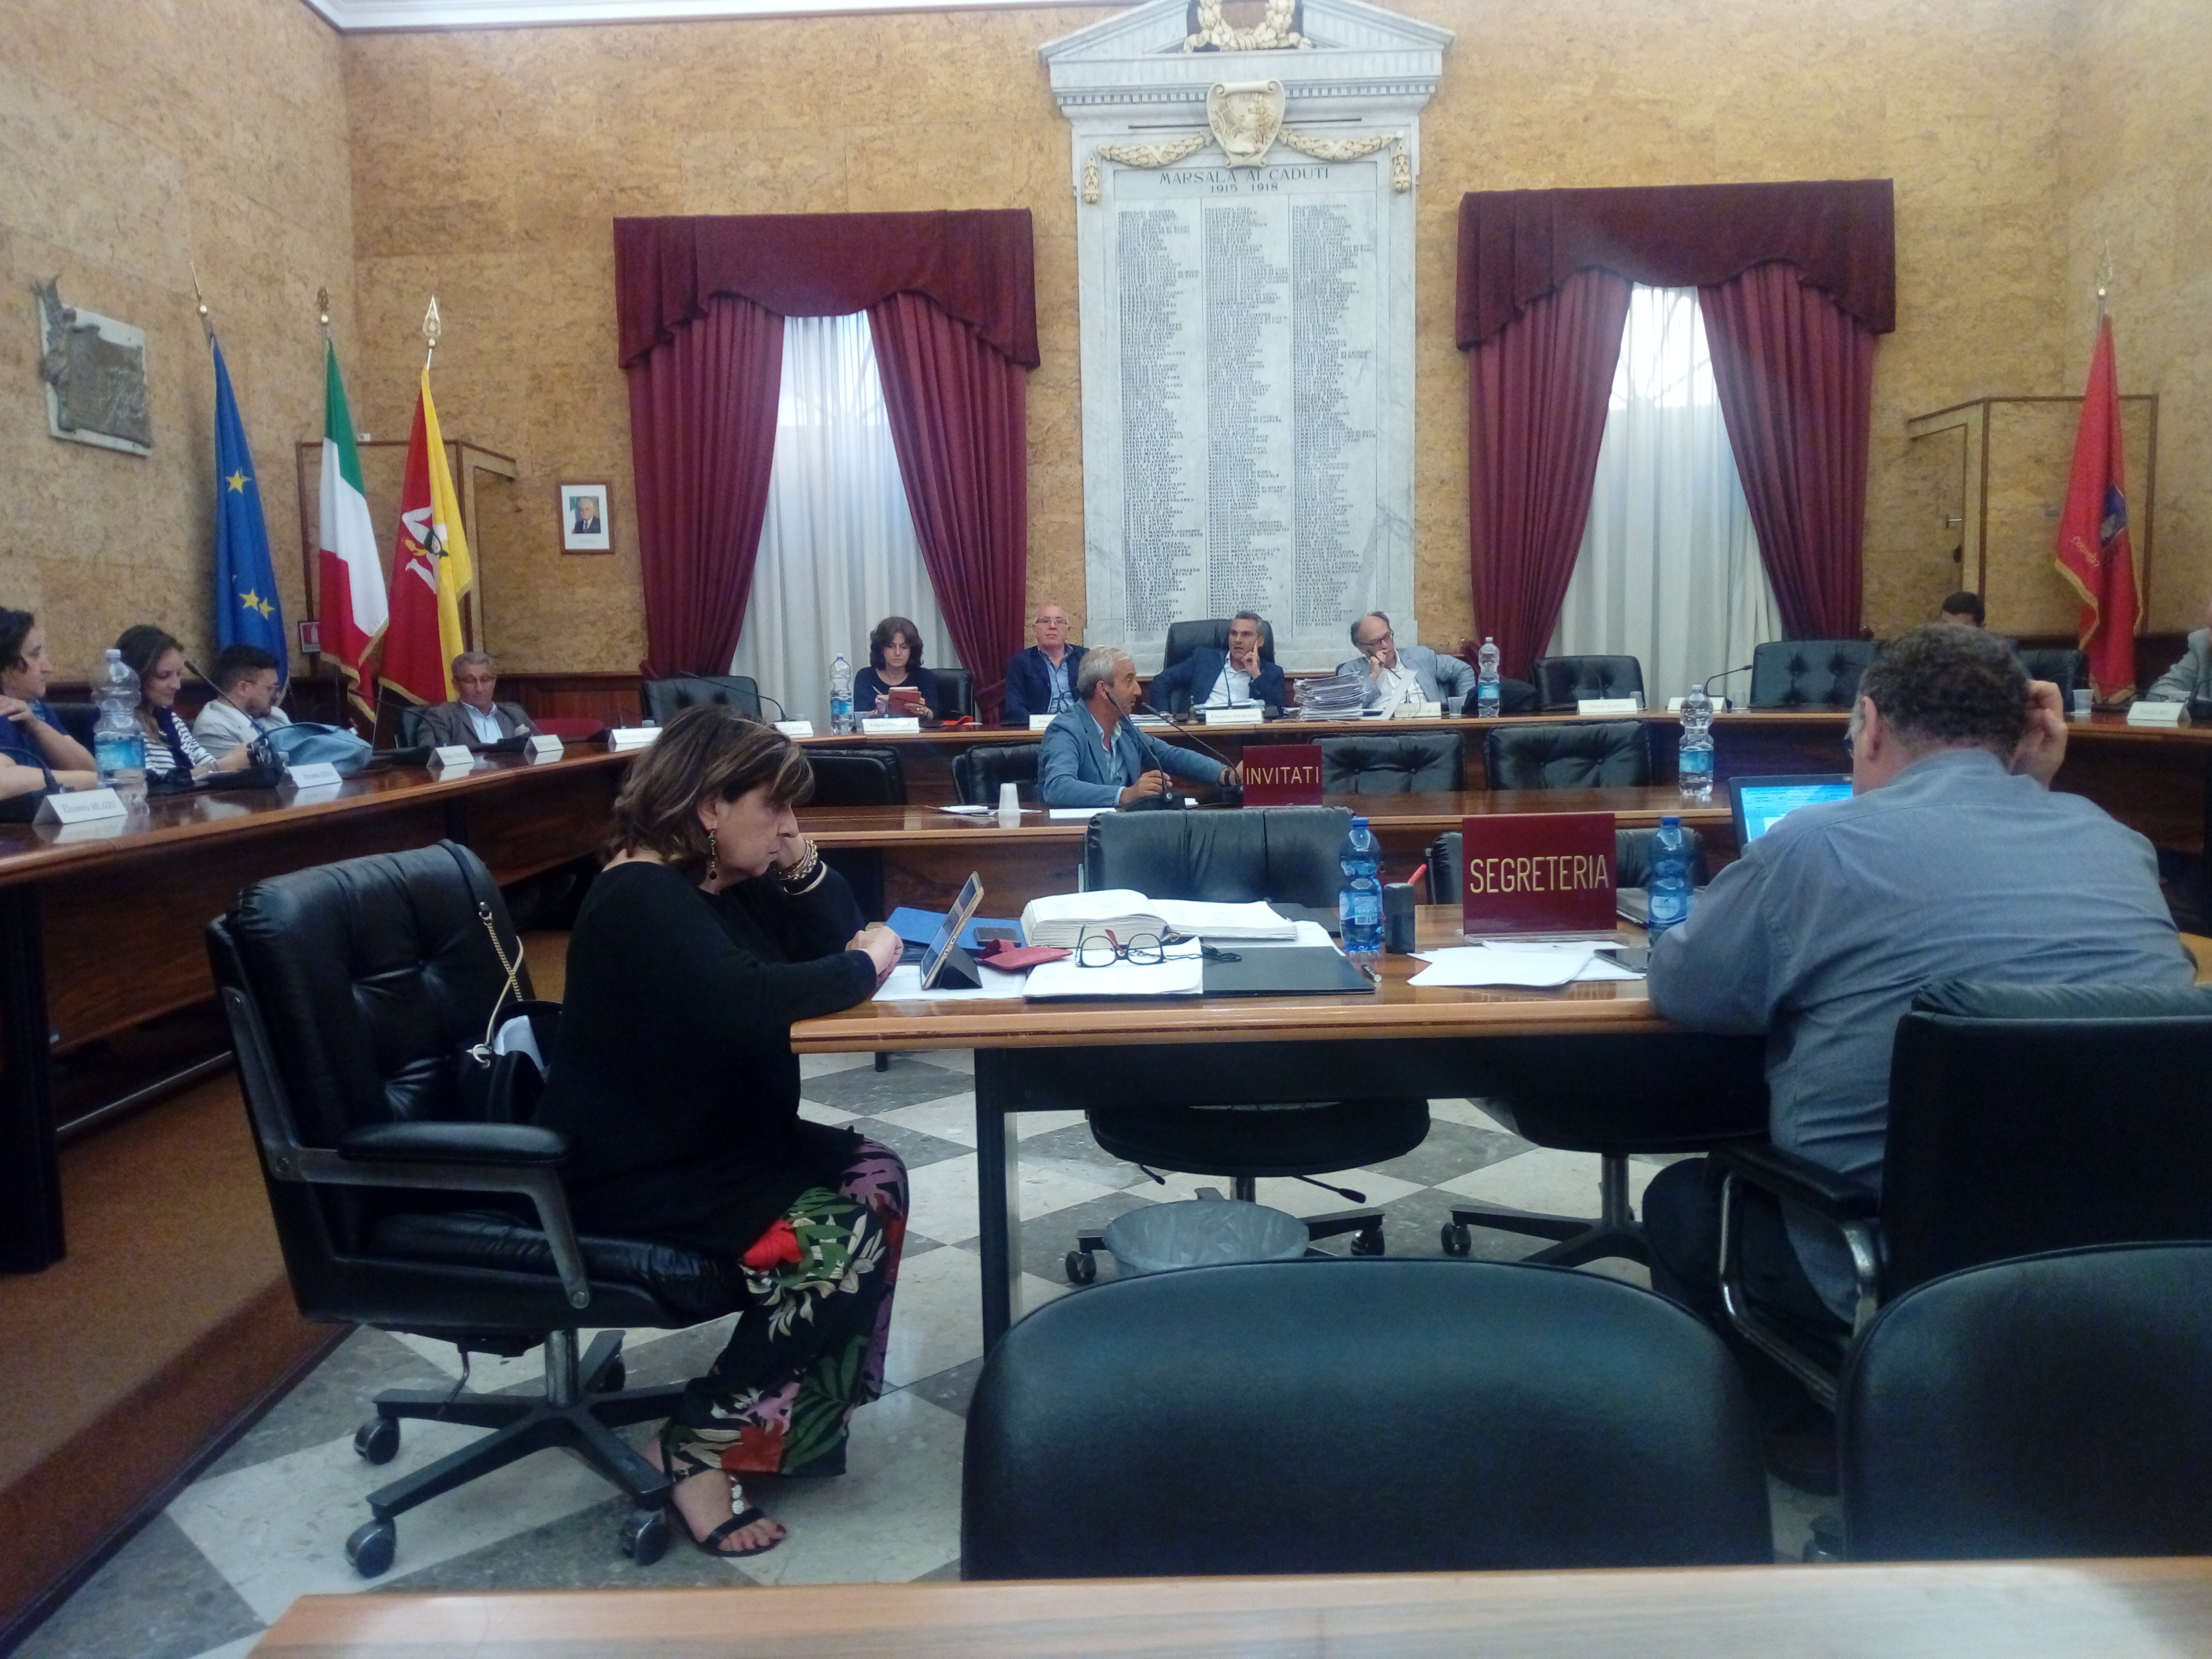 Il Consiglio comunale istituisce un tavolo di crisi sulla  situazione della Casa di Riposo Giovanni XXIII”